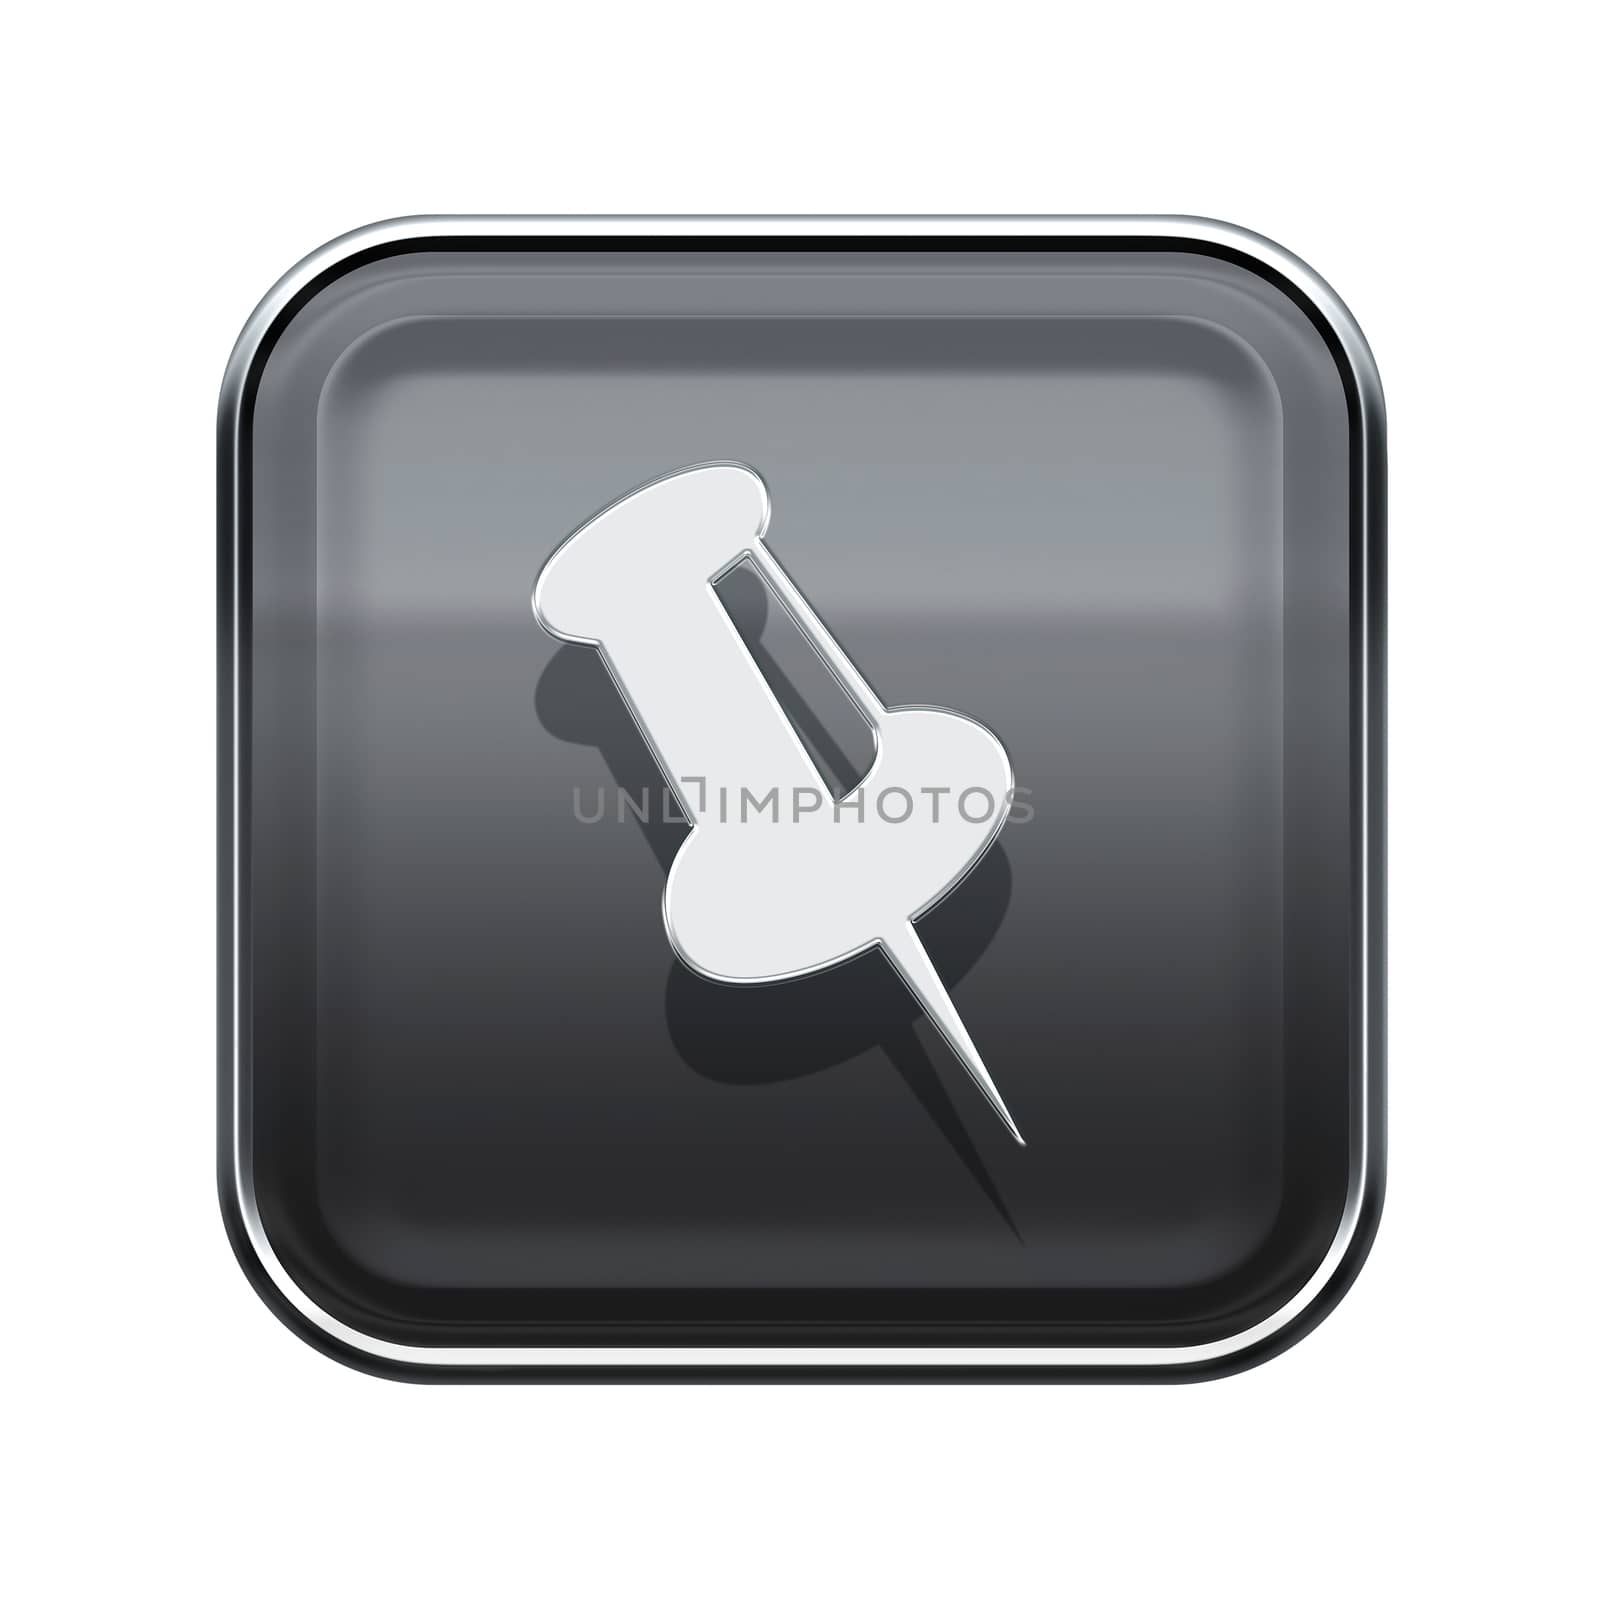 thumbtack icon glossy grey, isolated on white background.